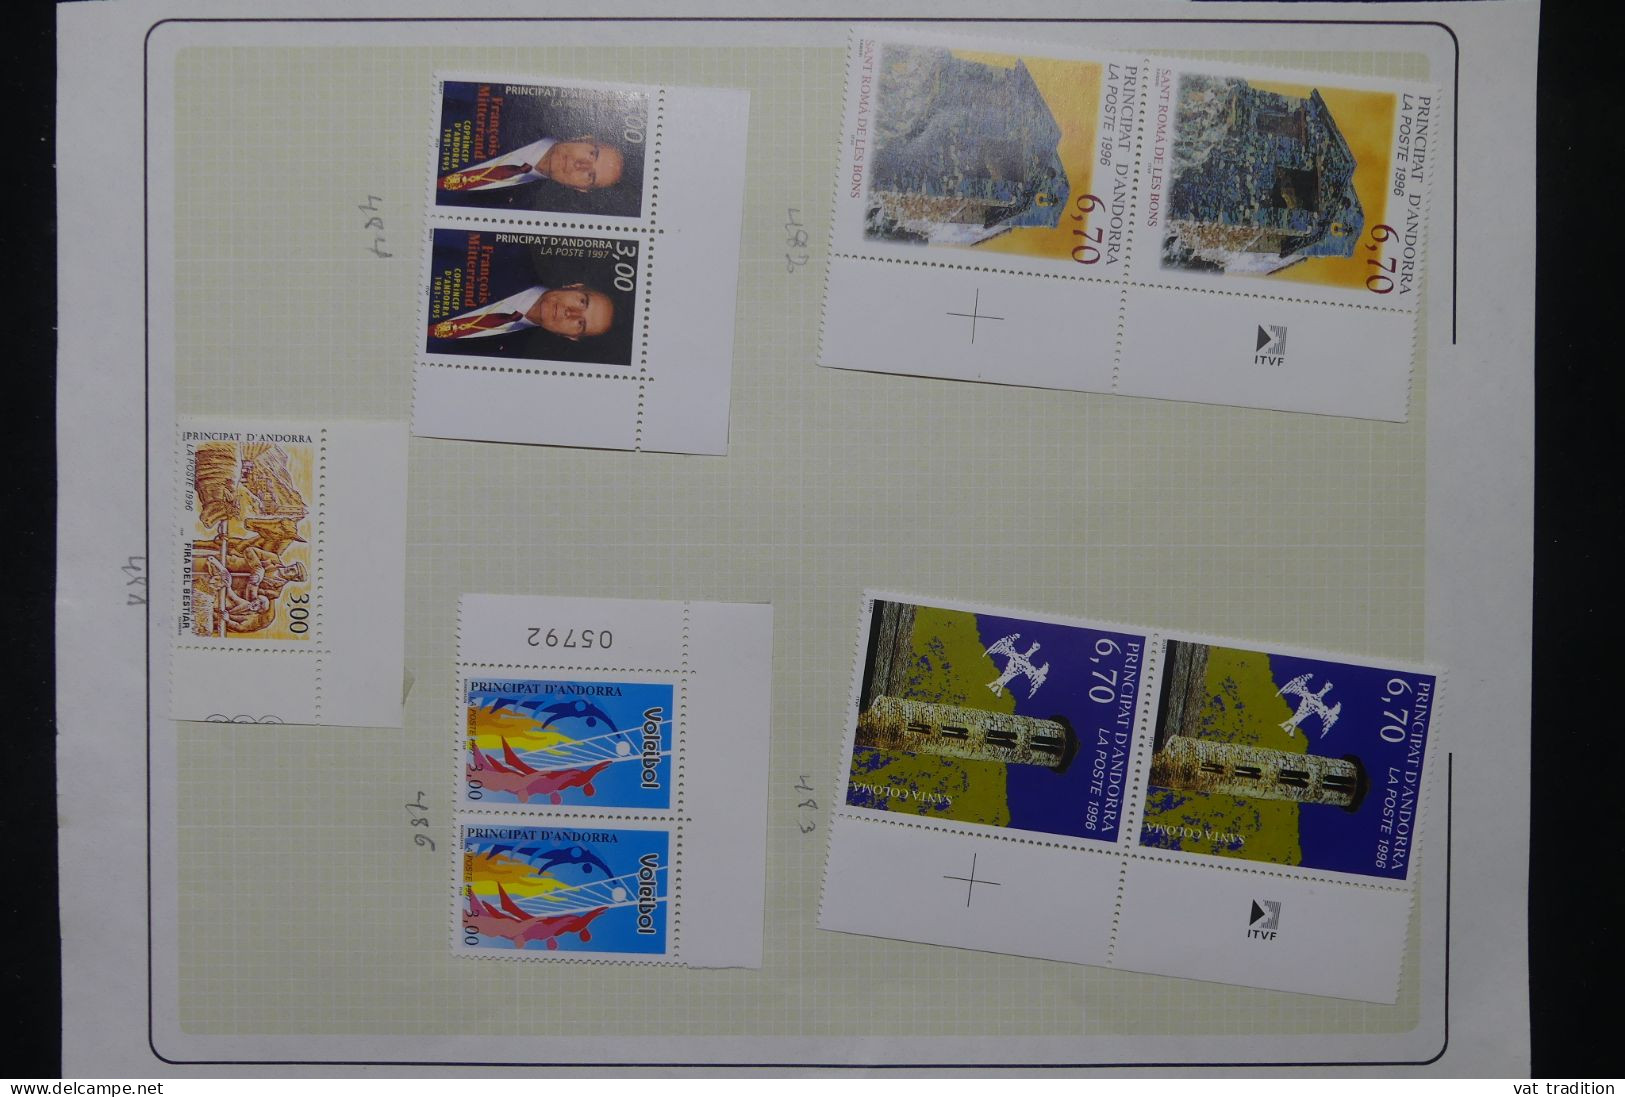 ANDORRE - Petite collection mais tous les timbres sont luxes - Les charnières sont sur les bords de feuille - A 78